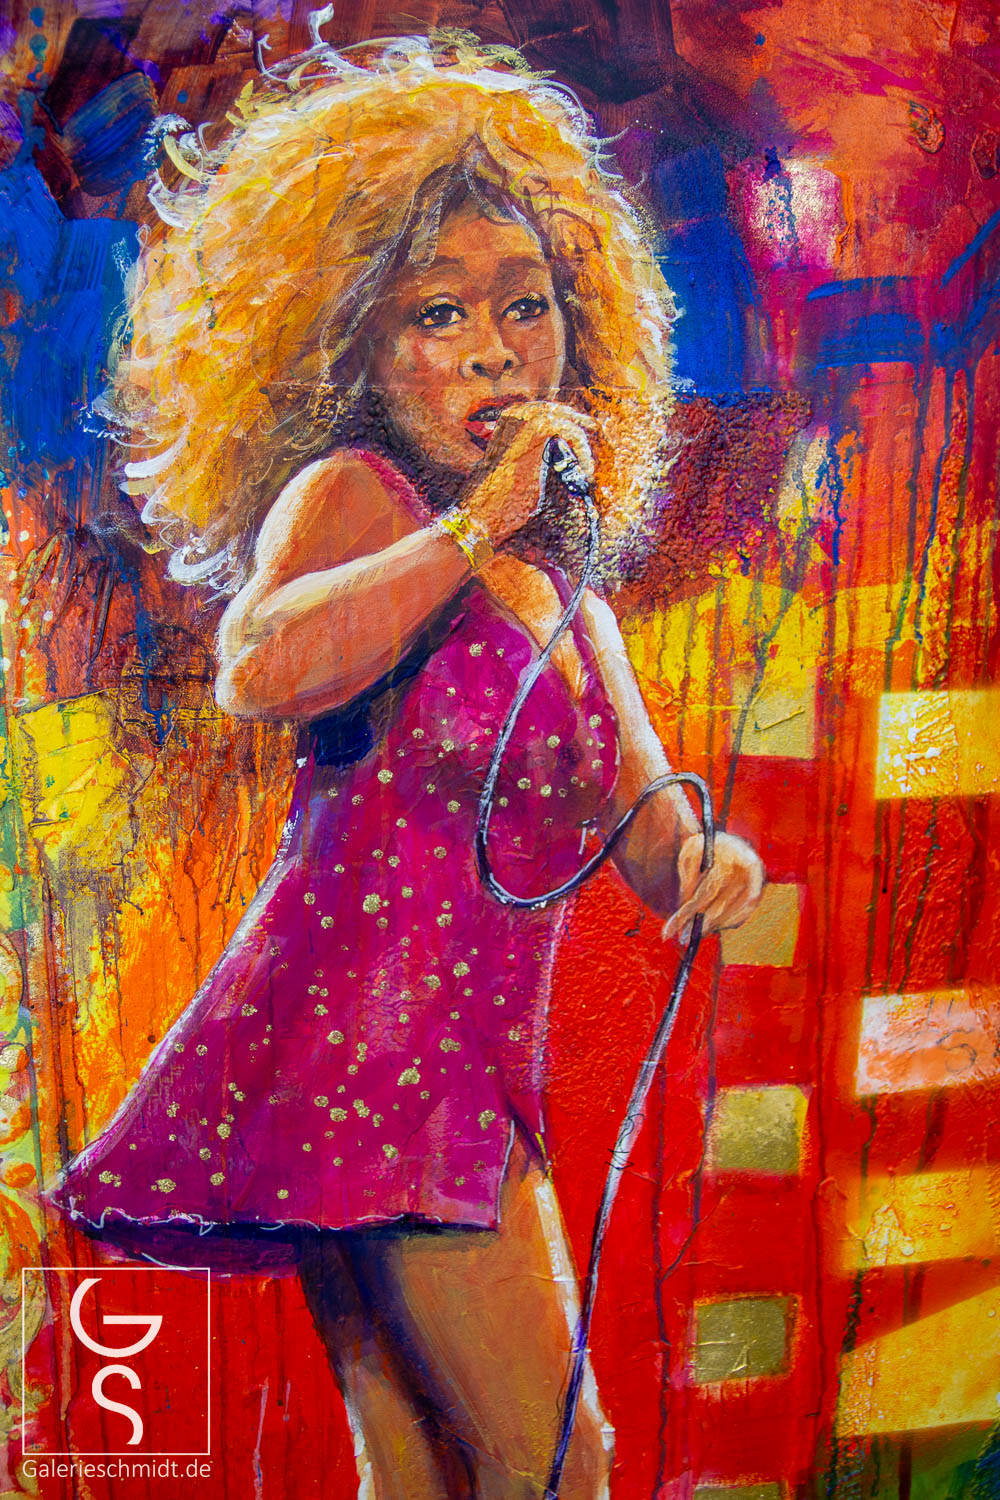 Tina Turner in Farbenpracht von Jean-Claude Picard, Gemälde der bekannten Sängerin in Pop-Art